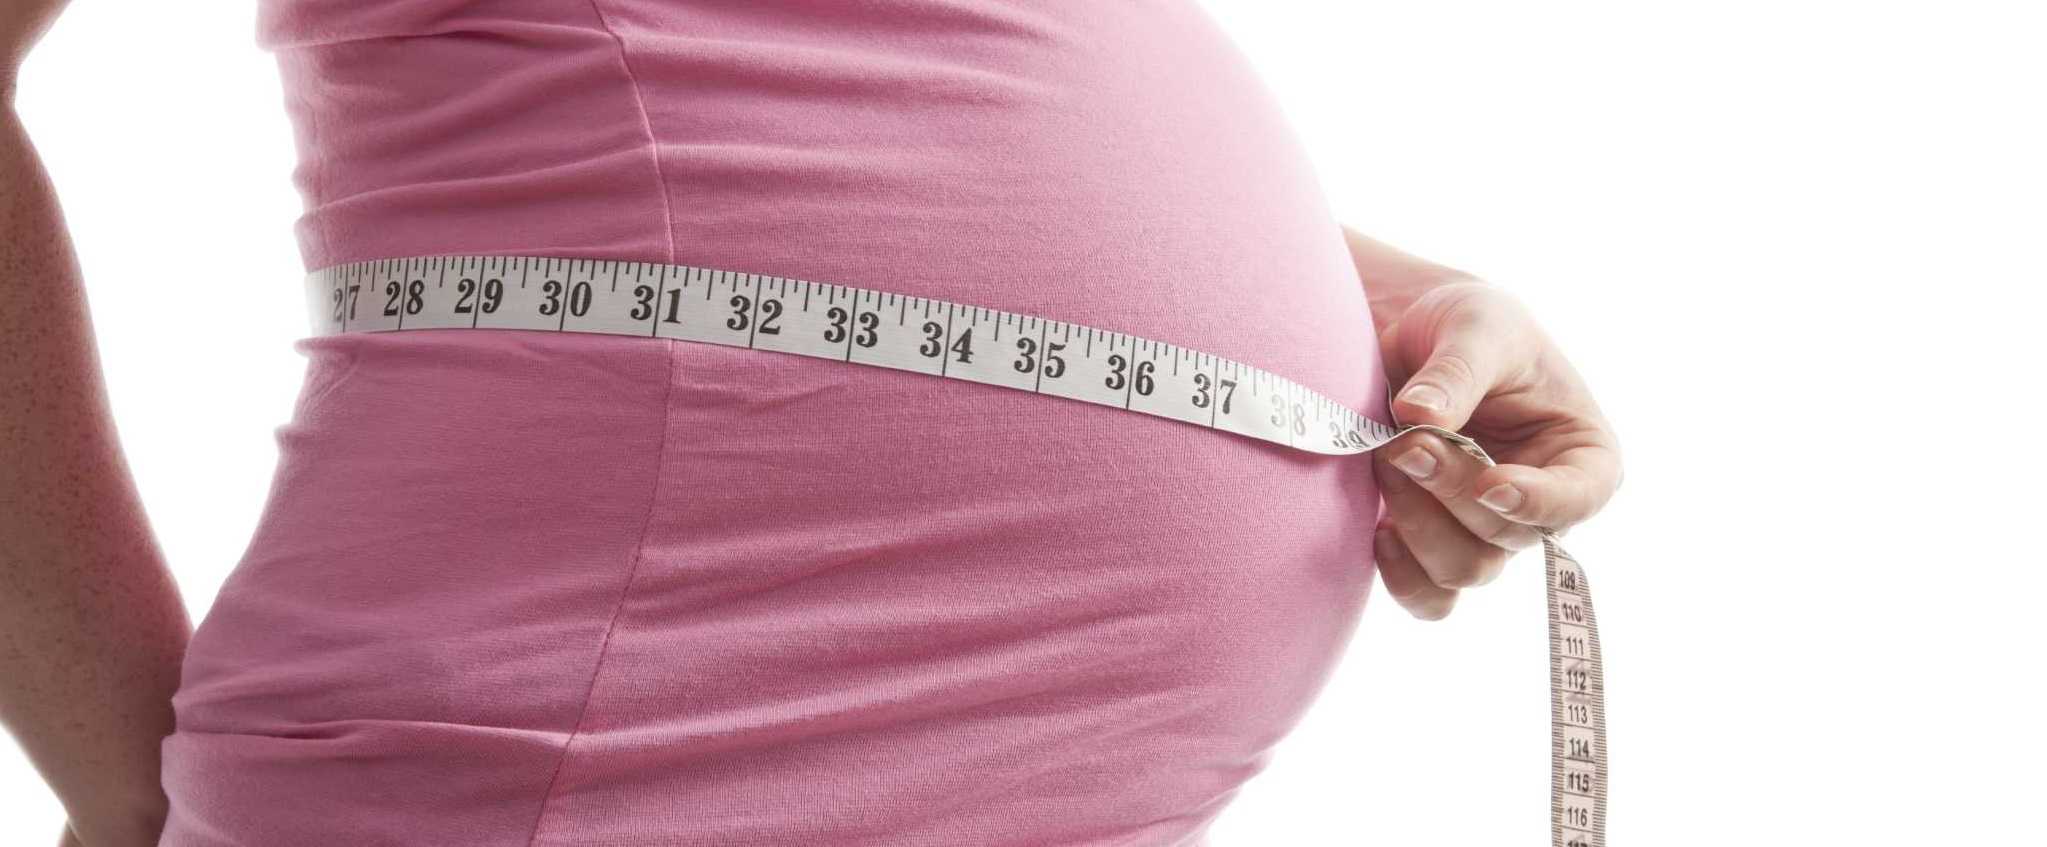 42 неделя беременности: что происходит с плодом и будущей мамой?